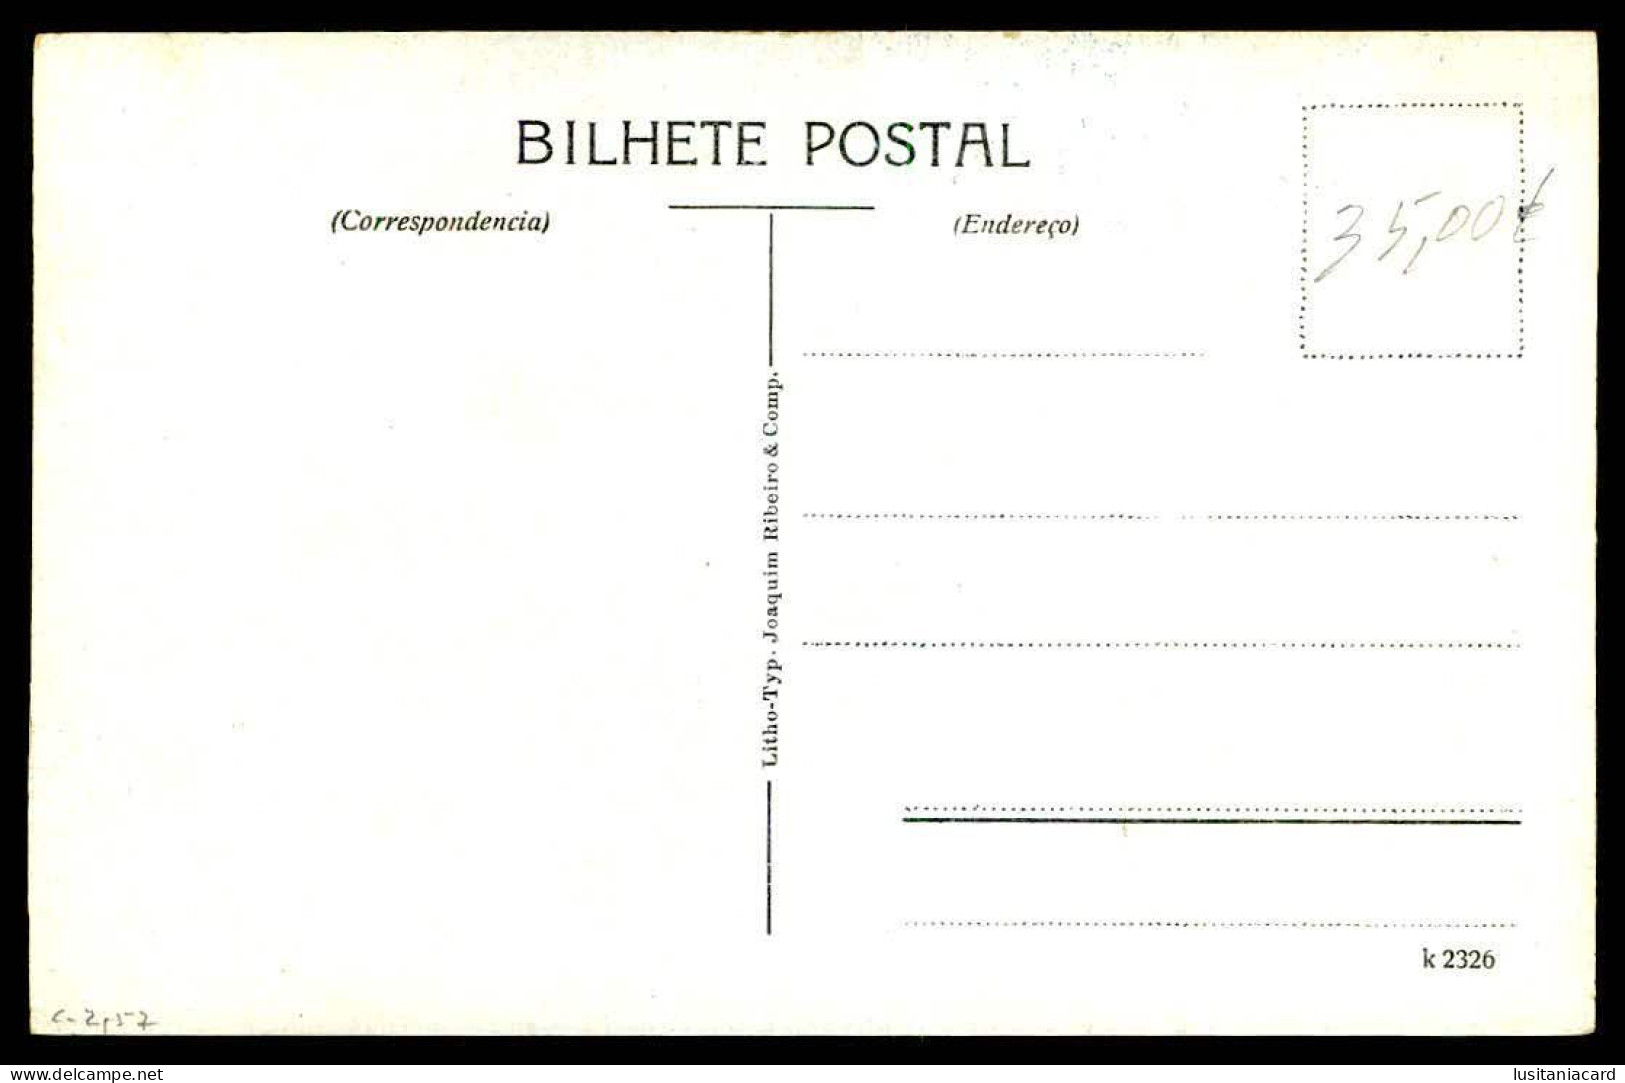 BAHIA - MERCES - Avenida Sete. ( Litho. Typ. Joaquim Ribeiro & Comp. Nº K 2326)  Carte Postale - Salvador De Bahia